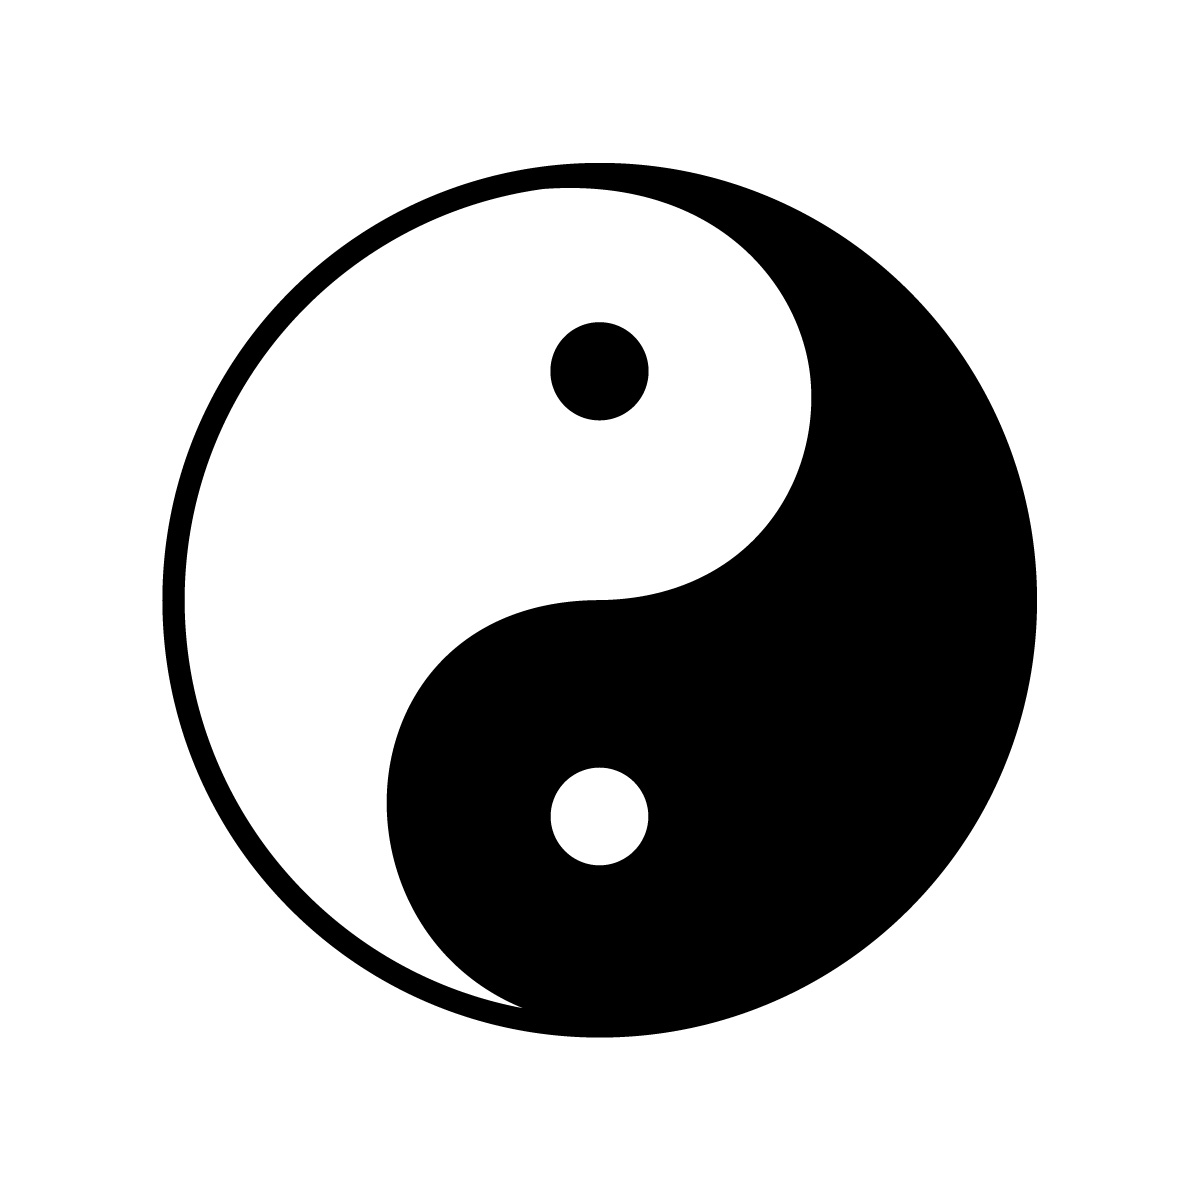 Símbolo de ying yang é um exemplo de equilíbrio visual.